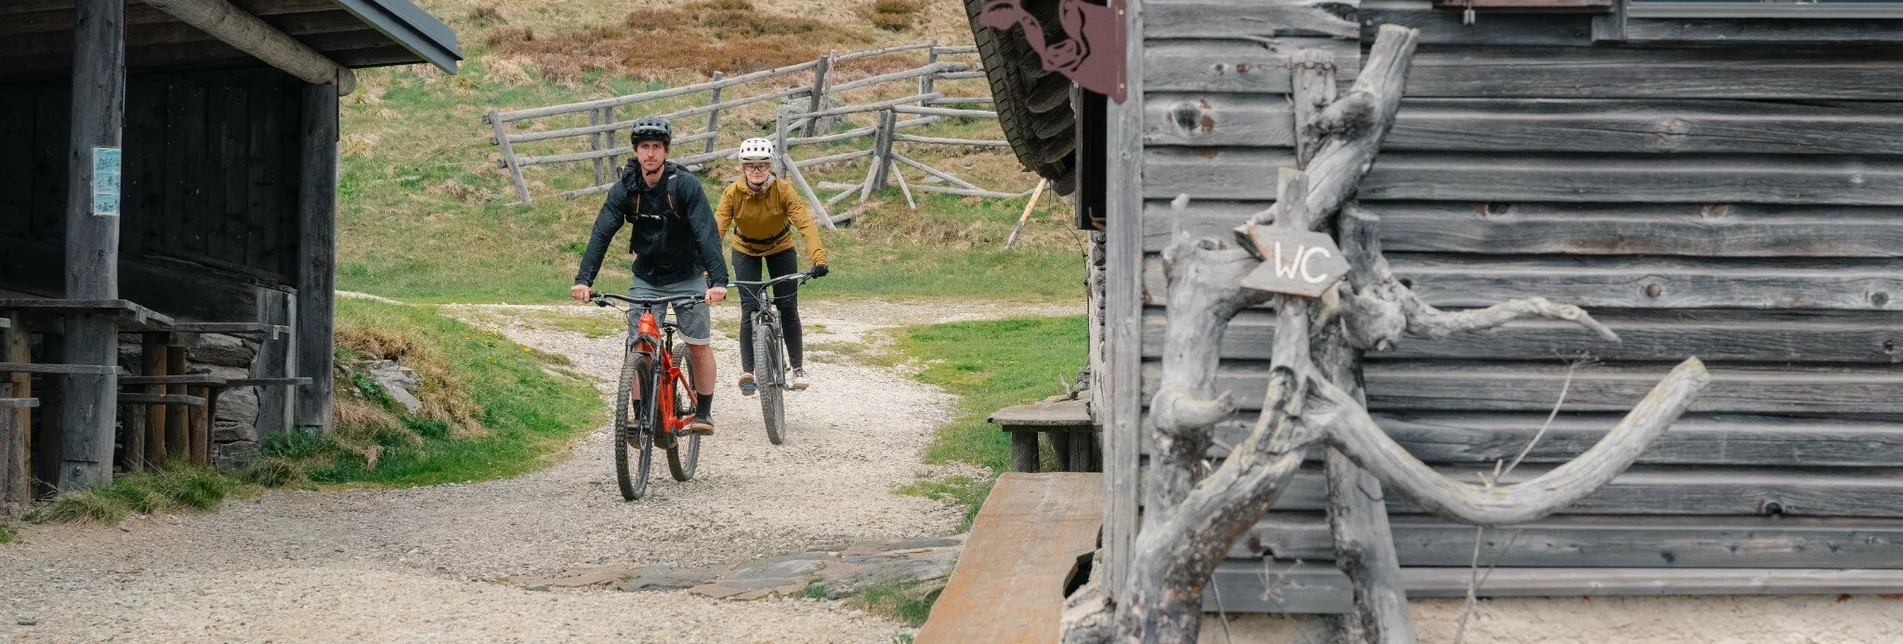 Mountainbike Steirische Wexl Trails - Dorfstatt Route - Touren-Impression #1 | © Verein Tourismusentwicklung Steirischer Wechsel